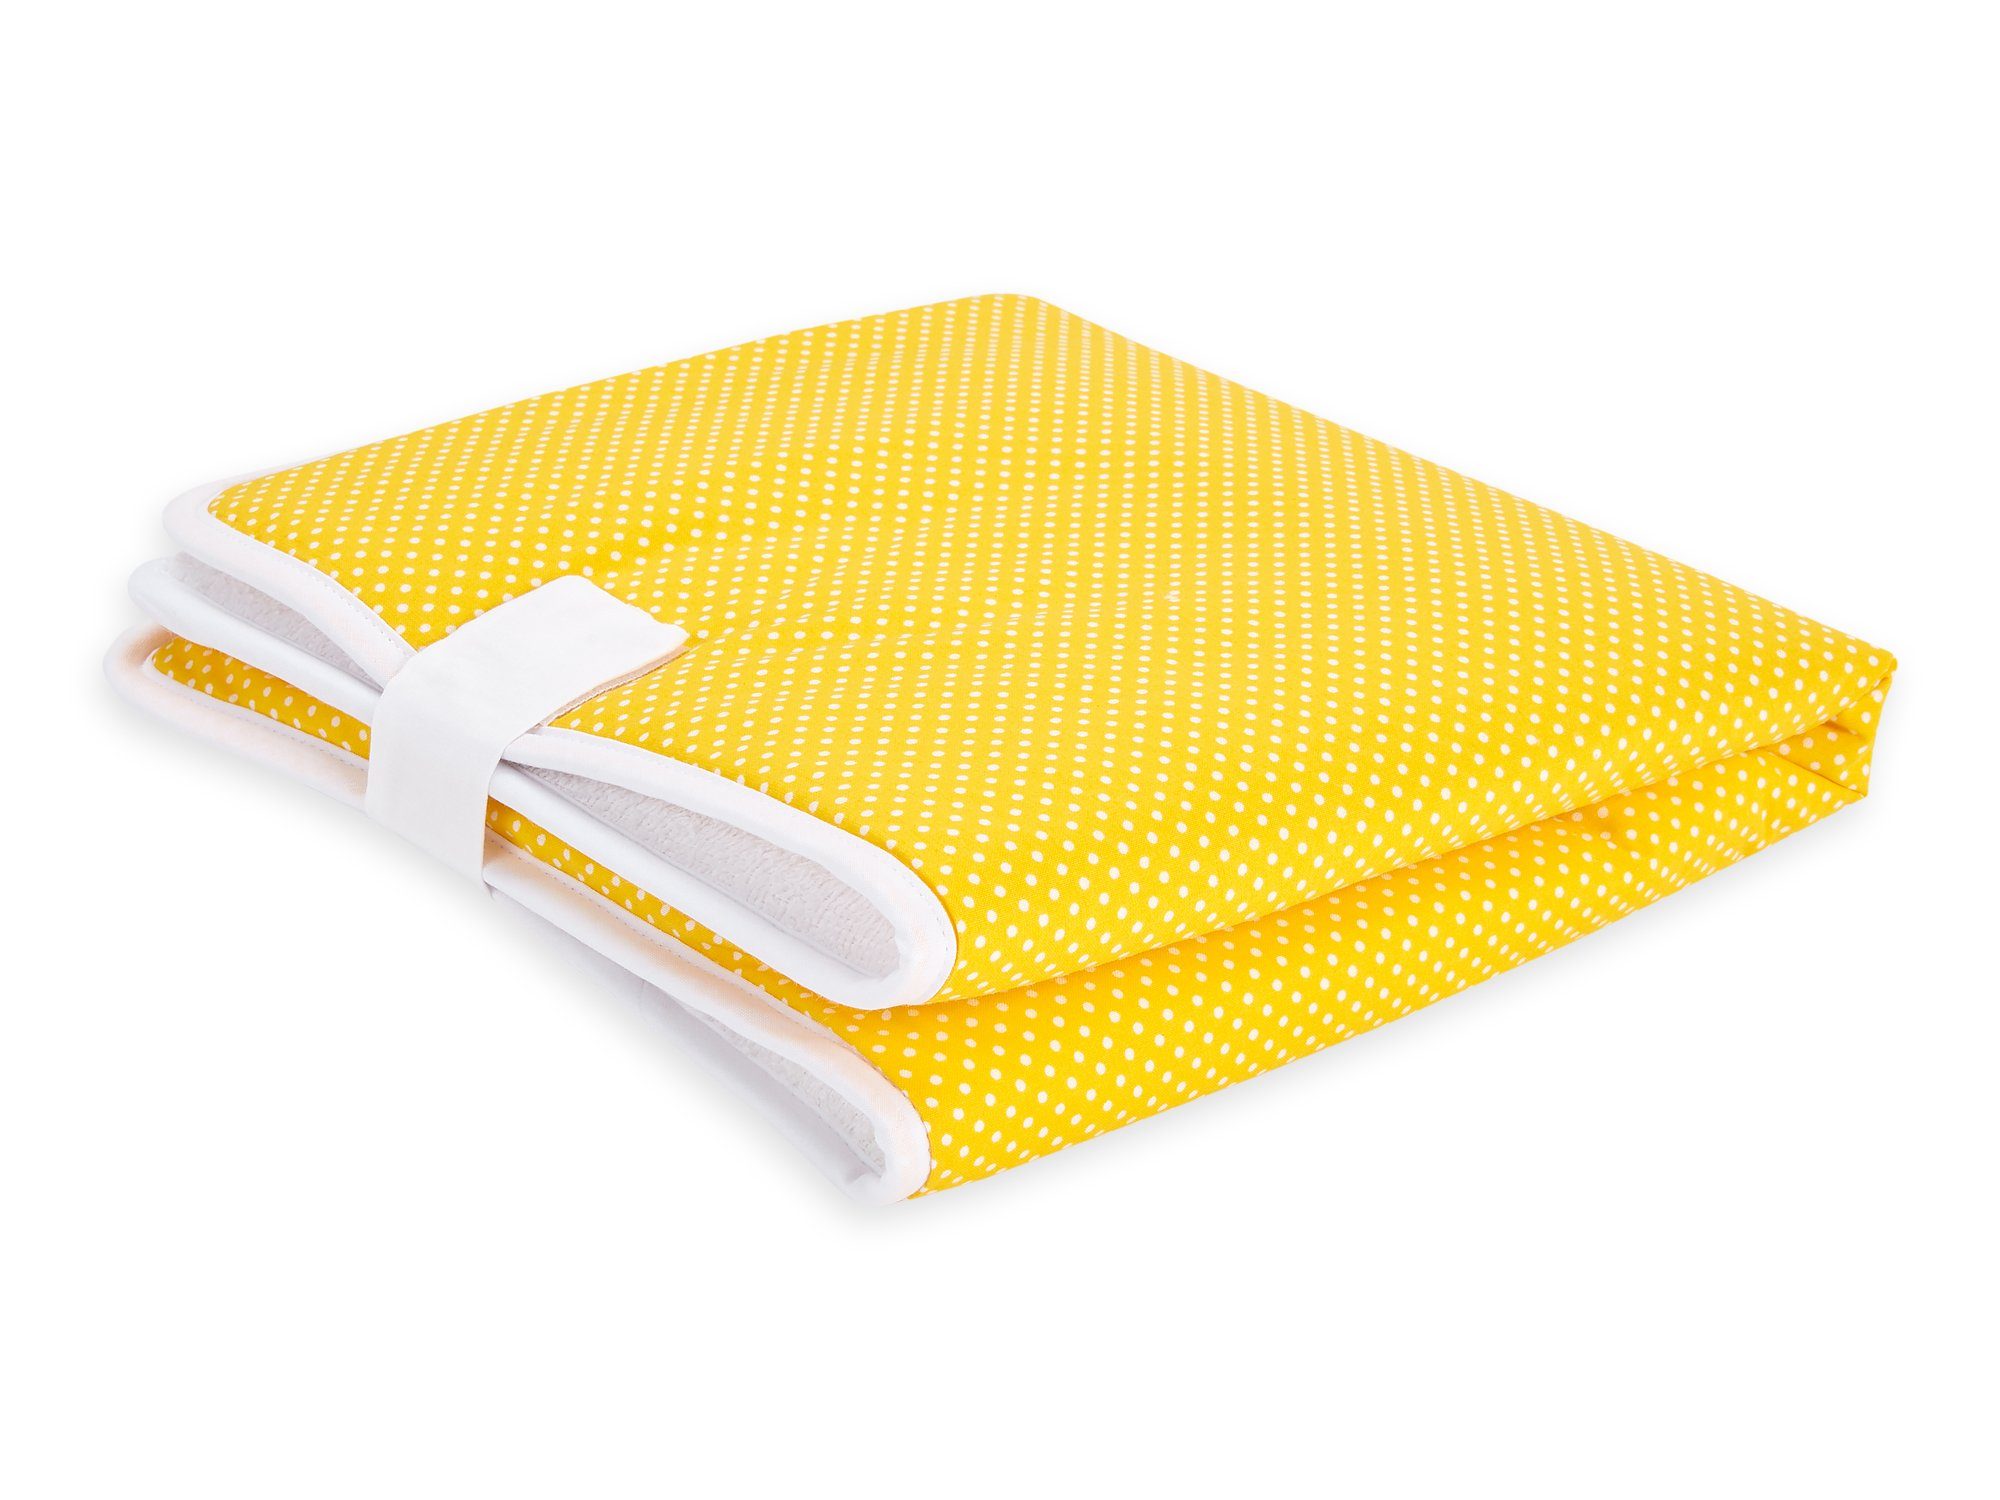 KraftKids Wickelauflage weiße Punkte auf Stoffsichten, faltbar Baumwolle, Reisewickelunterlage wasserundurchlässig, 3 Klettverschluss 100% Gelb, mit Innen aus